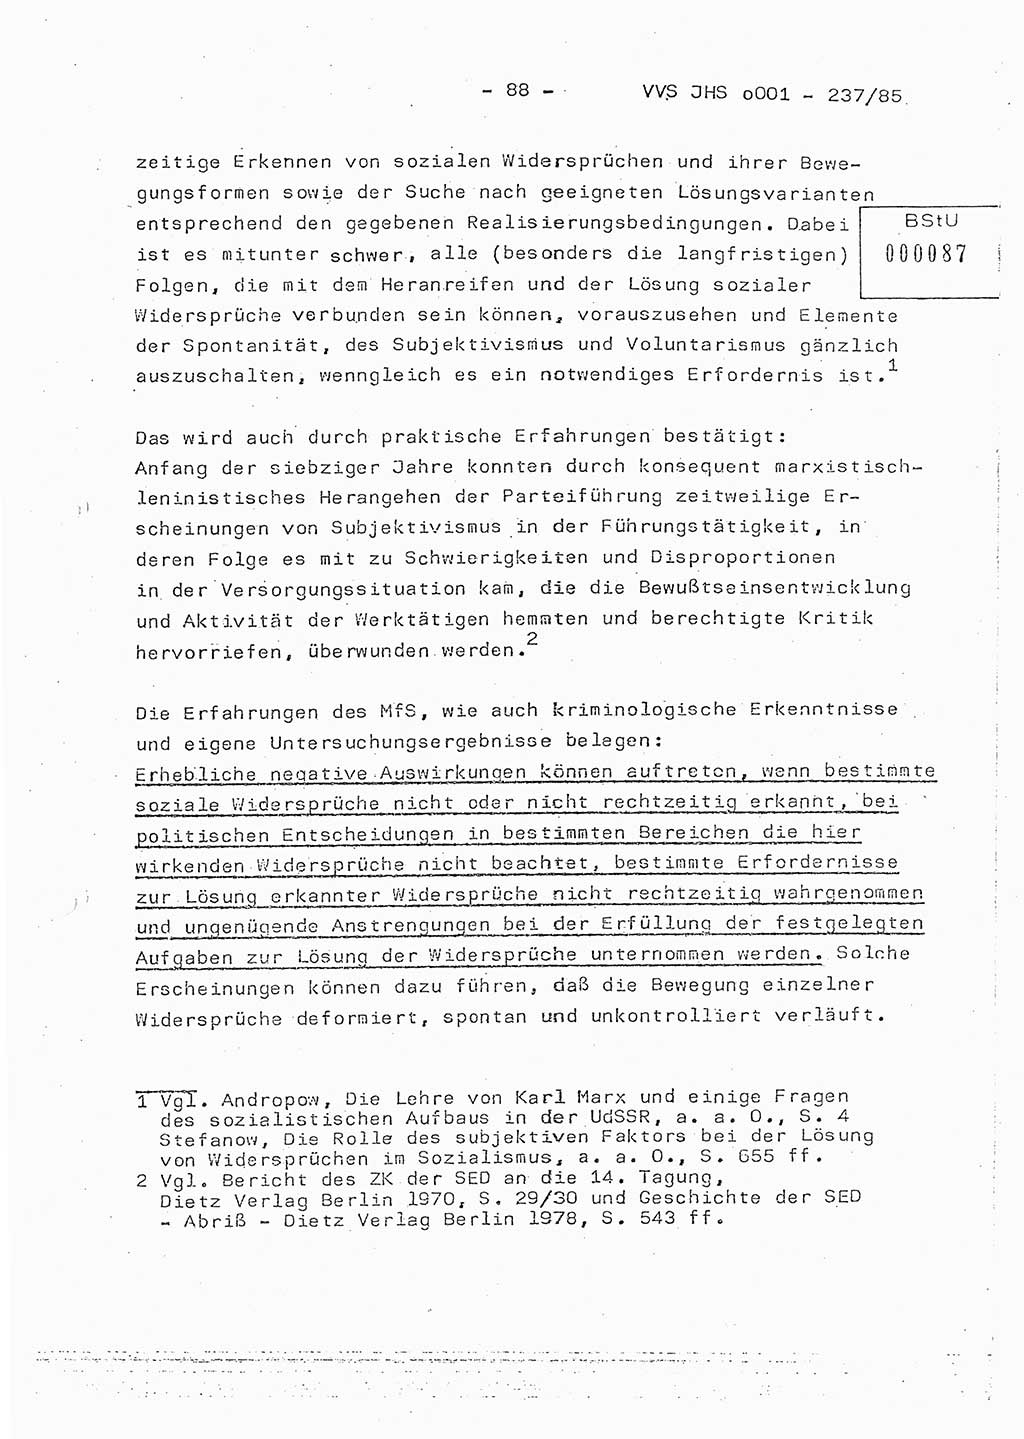 Dissertation Oberstleutnant Peter Jakulski (JHS), Oberstleutnat Christian Rudolph (HA Ⅸ), Major Horst Böttger (ZMD), Major Wolfgang Grüneberg (JHS), Major Albert Meutsch (JHS), Ministerium für Staatssicherheit (MfS) [Deutsche Demokratische Republik (DDR)], Juristische Hochschule (JHS), Vertrauliche Verschlußsache (VVS) o001-237/85, Potsdam 1985, Seite 88 (Diss. MfS DDR JHS VVS o001-237/85 1985, S. 88)